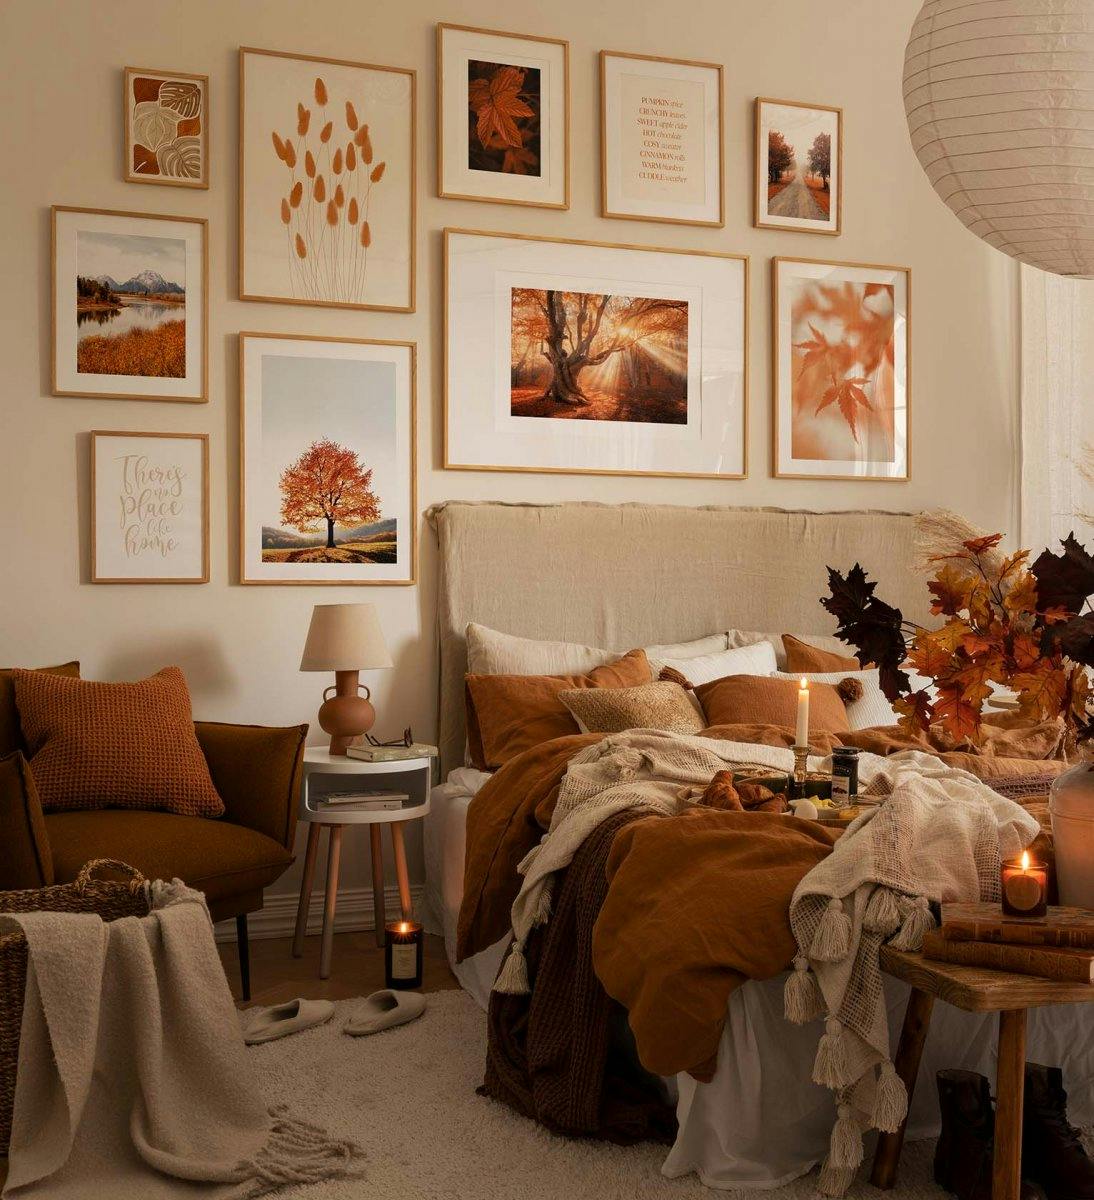 Mur de galerie inspiré de l'automne avec des gravures et des photographies dans des cadres orange et chêne pour la chambre